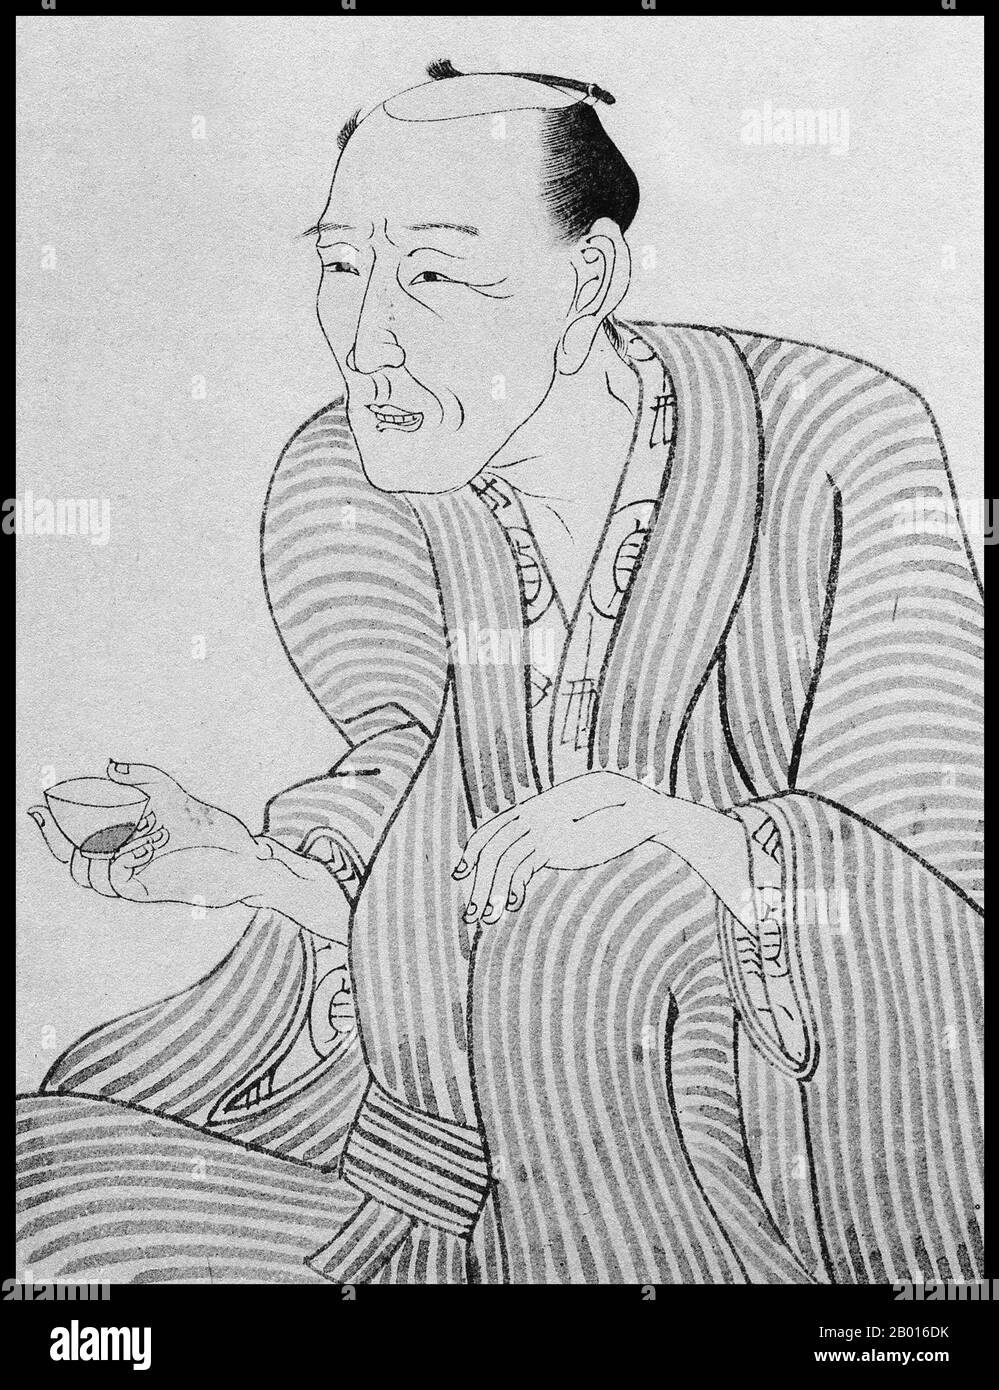 Japan: Porträt des japanischen Schriftstellers Jippensha Ikku (1765. – 12. September 1831). Illustration von Utagawa Kunisada (1786-1865), 19. Jahrhundert. Jippensha Ikku, richtiger Name Shigeta Sadakazu, war eine fruchtbare japanische Schriftstellerin aus der späten Edo-Zeit. Er lebte hauptsächlich in Edo (Tokio) im Dienste von Samurai, verbrachte aber auch einige Zeit in Osaka als Stadtbewohner. Er gehörte zu den produktivsten Schriftstellern von Yellow-Backed Novels (kibyōshi) seiner Zeit - zwischen 1795 und 1801 schrieb er mindestens zwanzig Romane pro Jahr und schrieb danach Sharebon, Kokkeibon und über 360 illustrierte Geschichten (gokan). Stockfoto